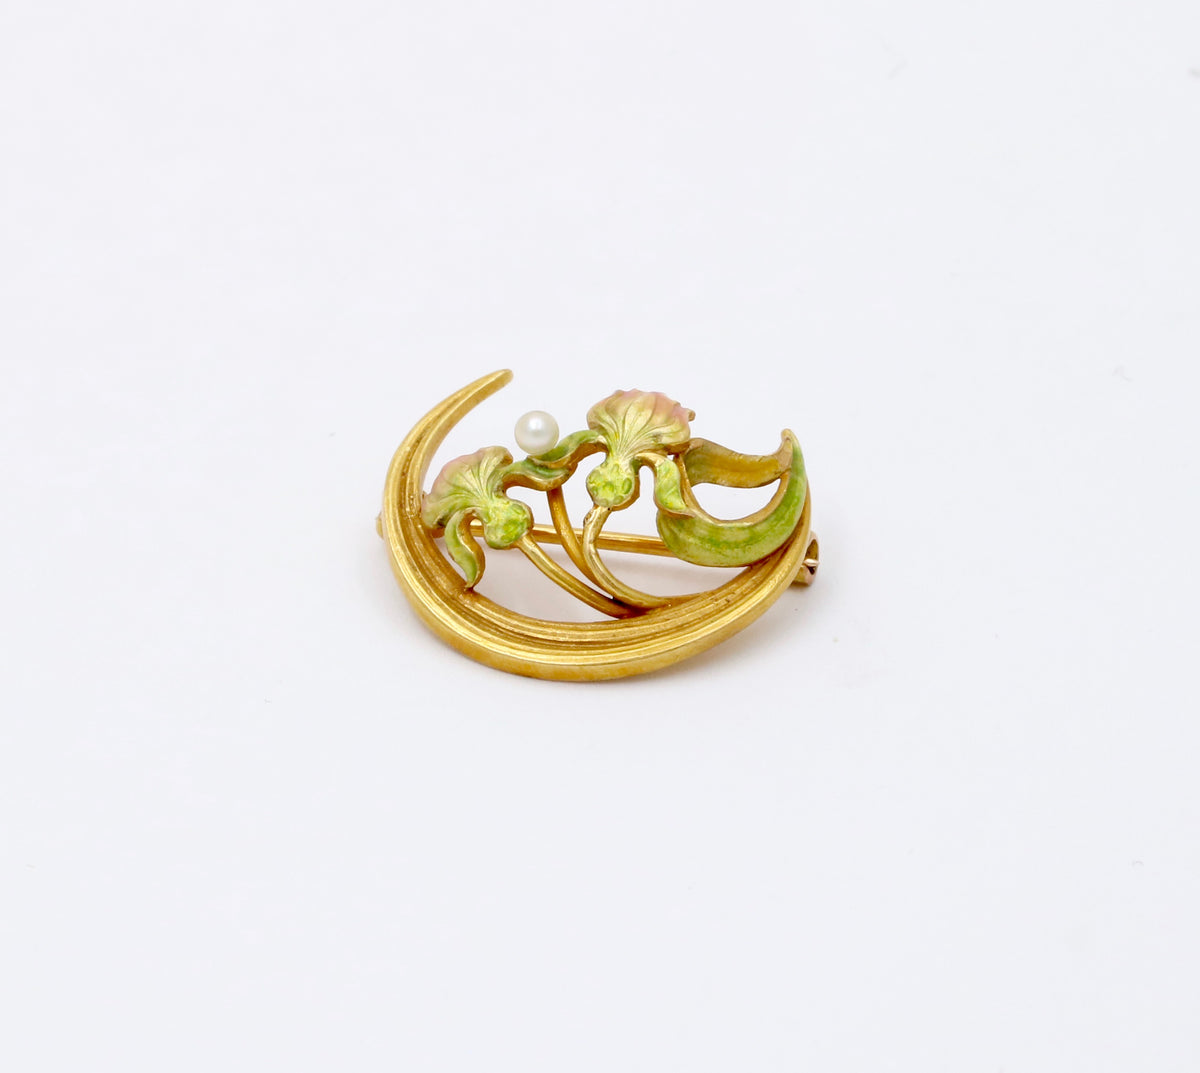 Art Nouveau Krementz 14K Gold and Enamel Crescent and Lotus Flower Pin